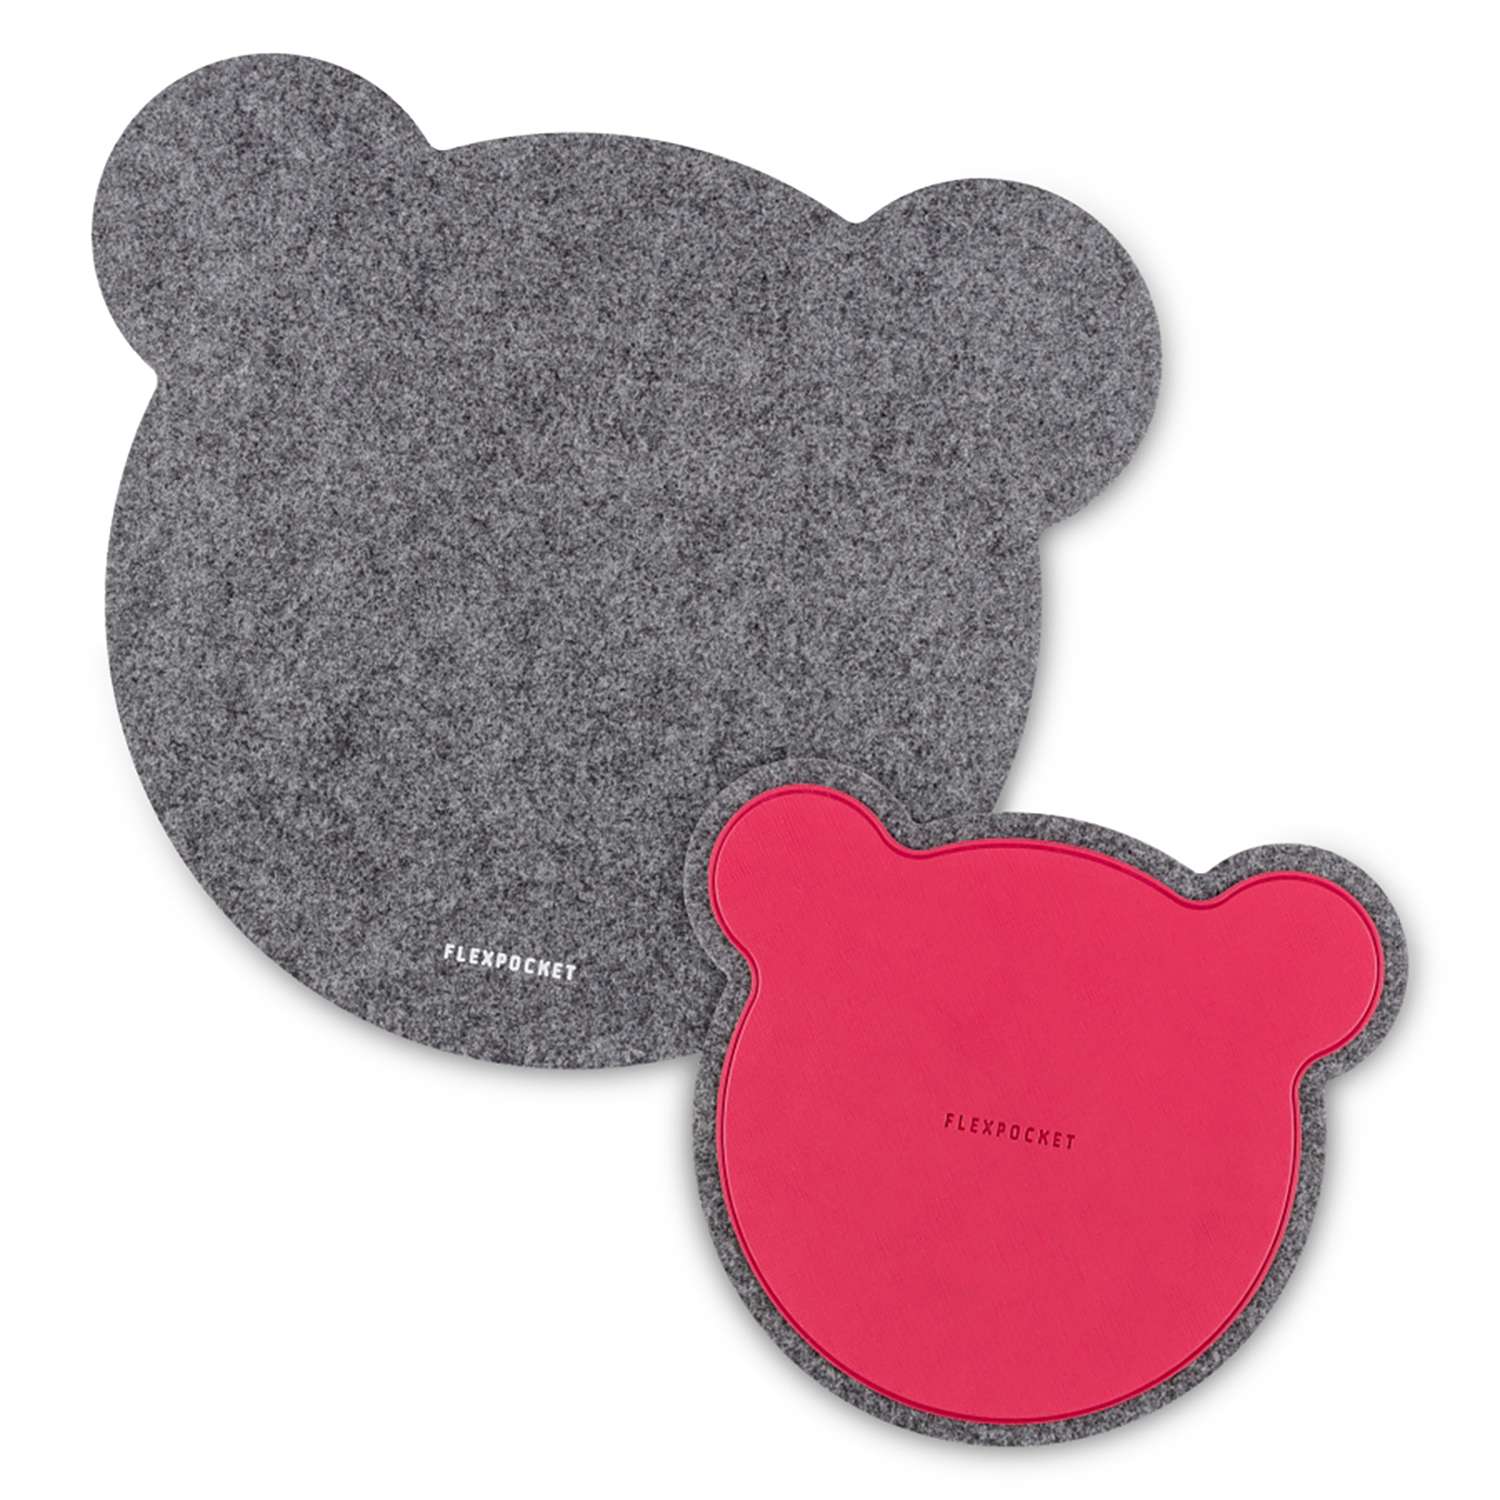 Настольный коврик Flexpocket для мыши в виде медведя с подставкой под кружку темно-серый - фото 1